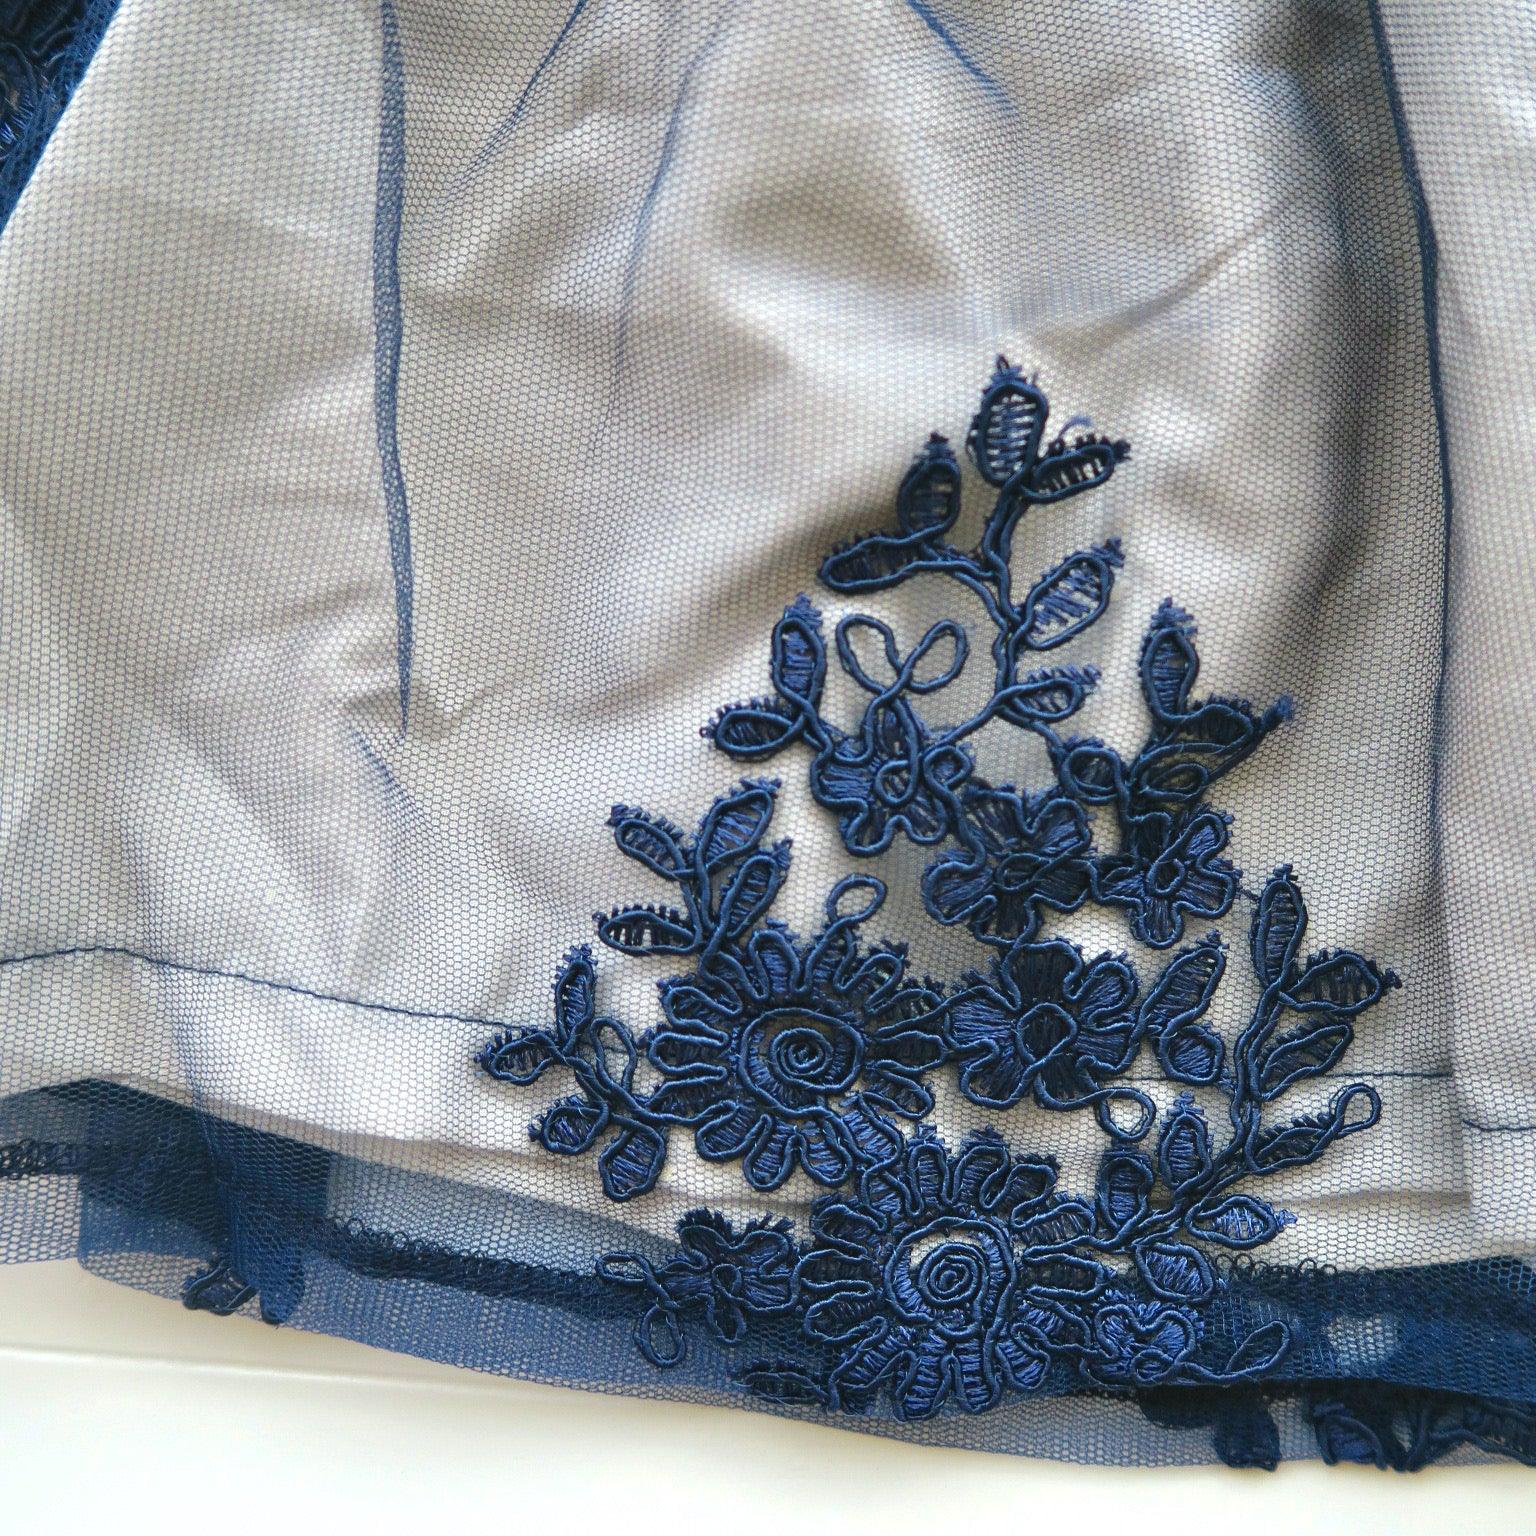 Iris Dress in Fancy Blue Tulle Embroidery - Lil' Tati